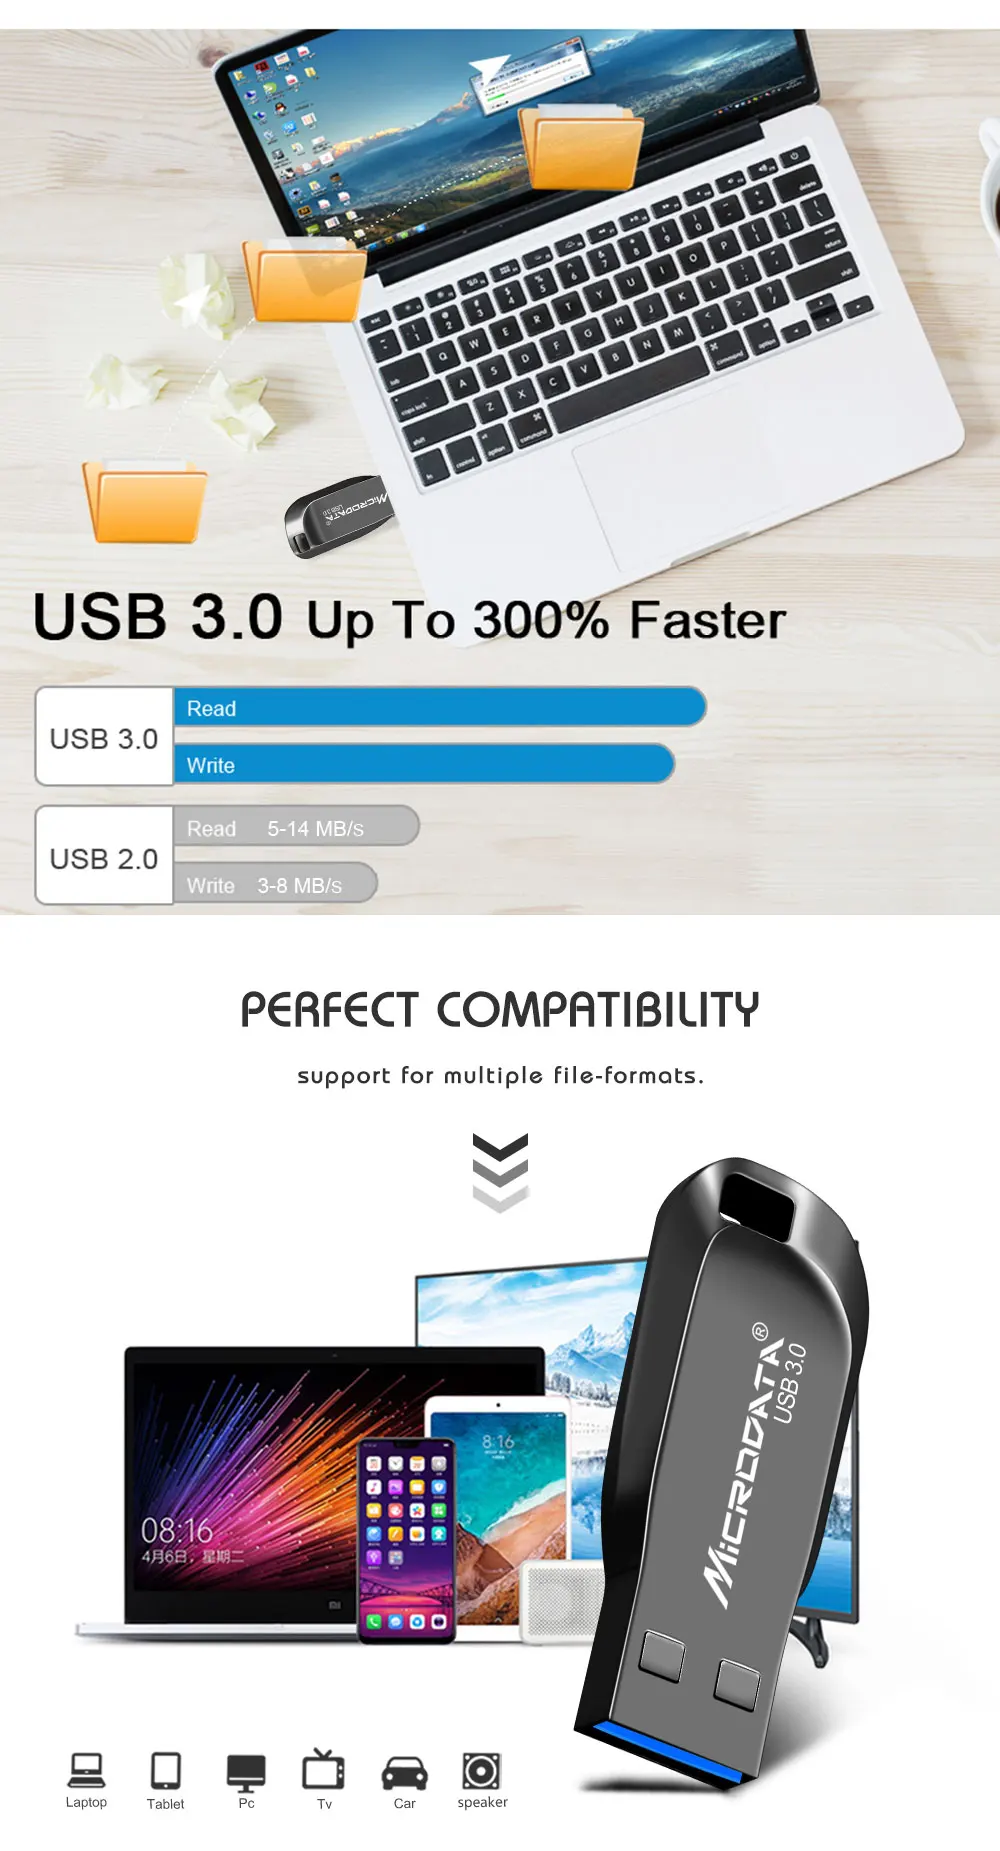 Серебристый/черный металлический USB флеш-накопитель Usb 3,0 флеш-накопитель 64 Гб 128 ГБ высокоскоростной флеш-накопитель 32 Гб 16 Гб мини USB флешка брелок флешка